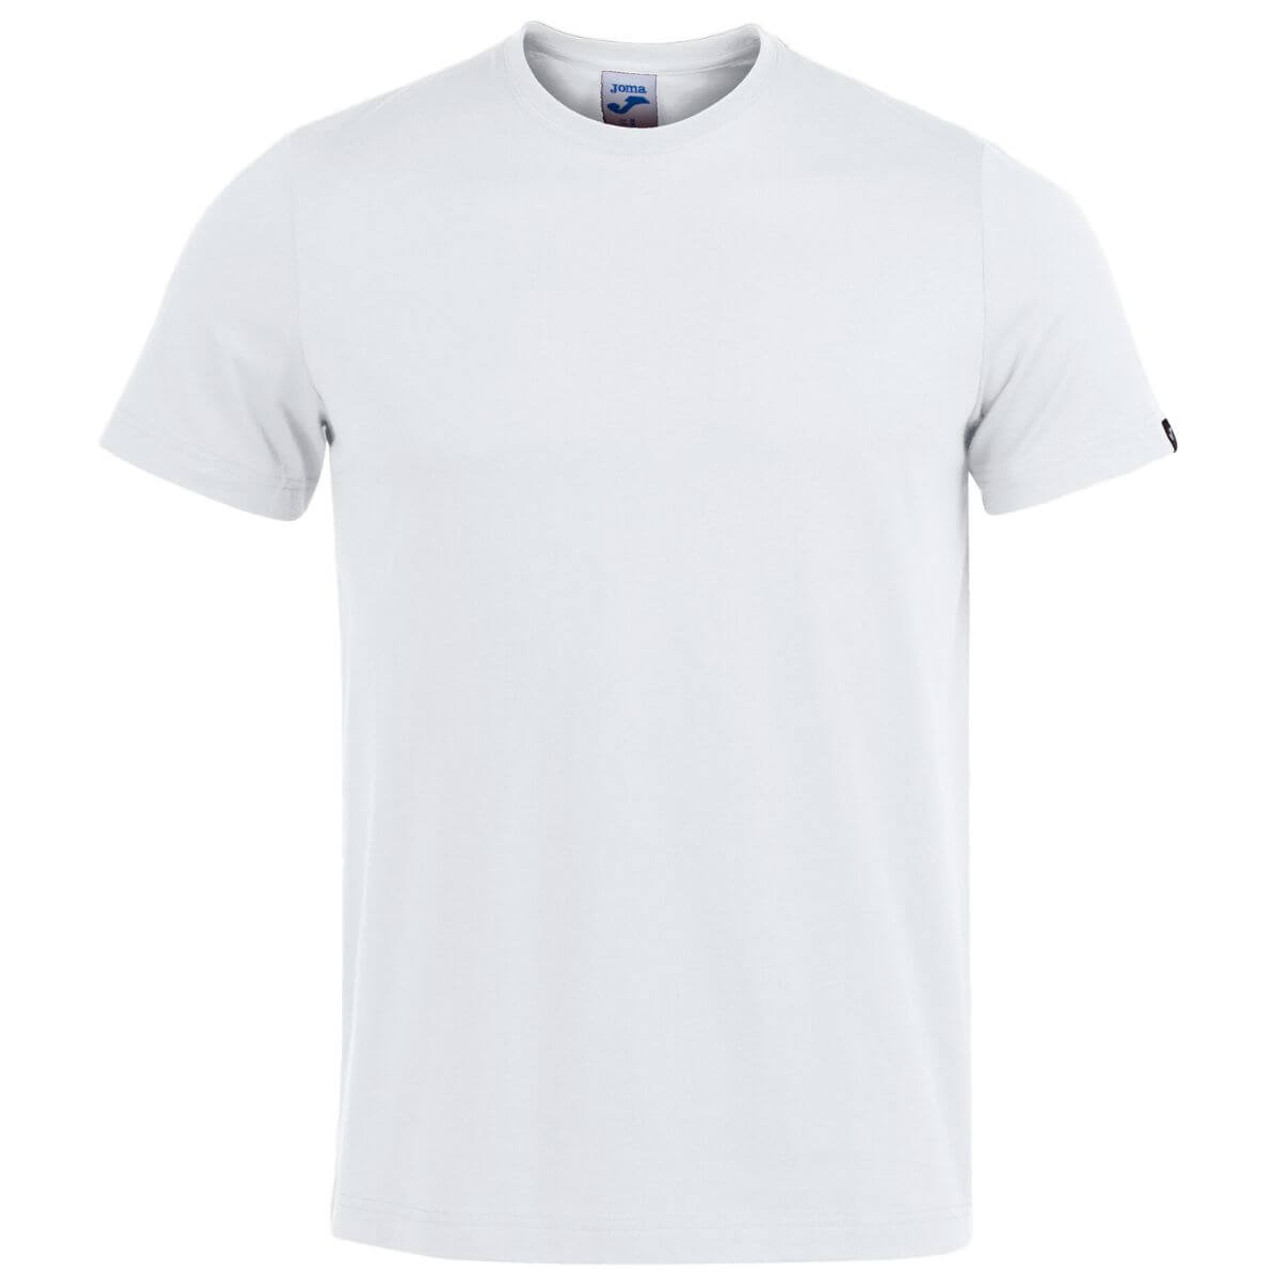 Las mejores ofertas en Joma Camisetas para Hombres